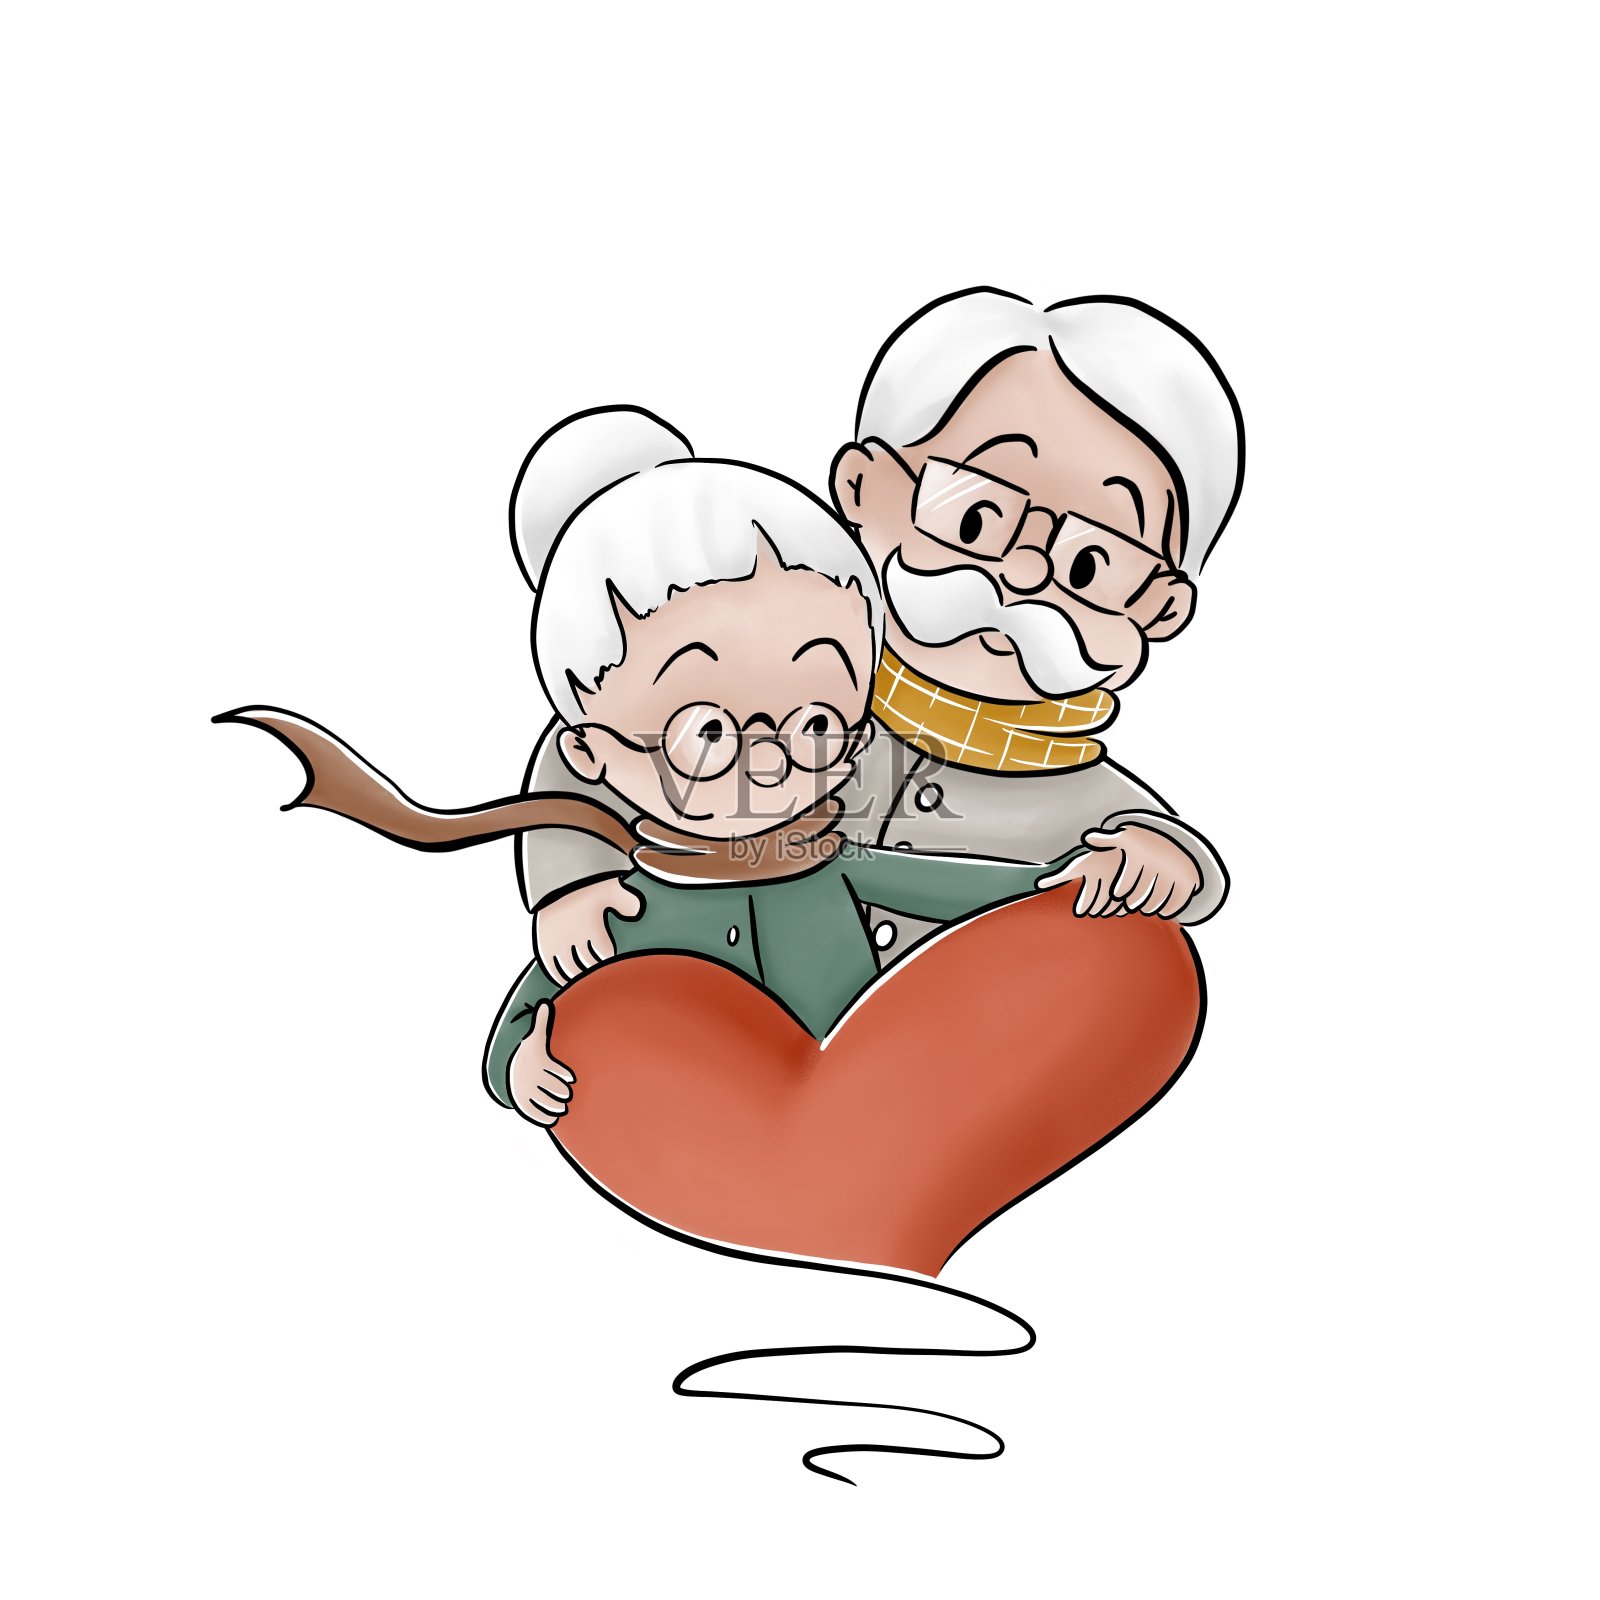 情人節牽手的老人插畫圖案素材 | PNG和向量圖 | 透明背景圖片 | 免費下载 - Pngtree